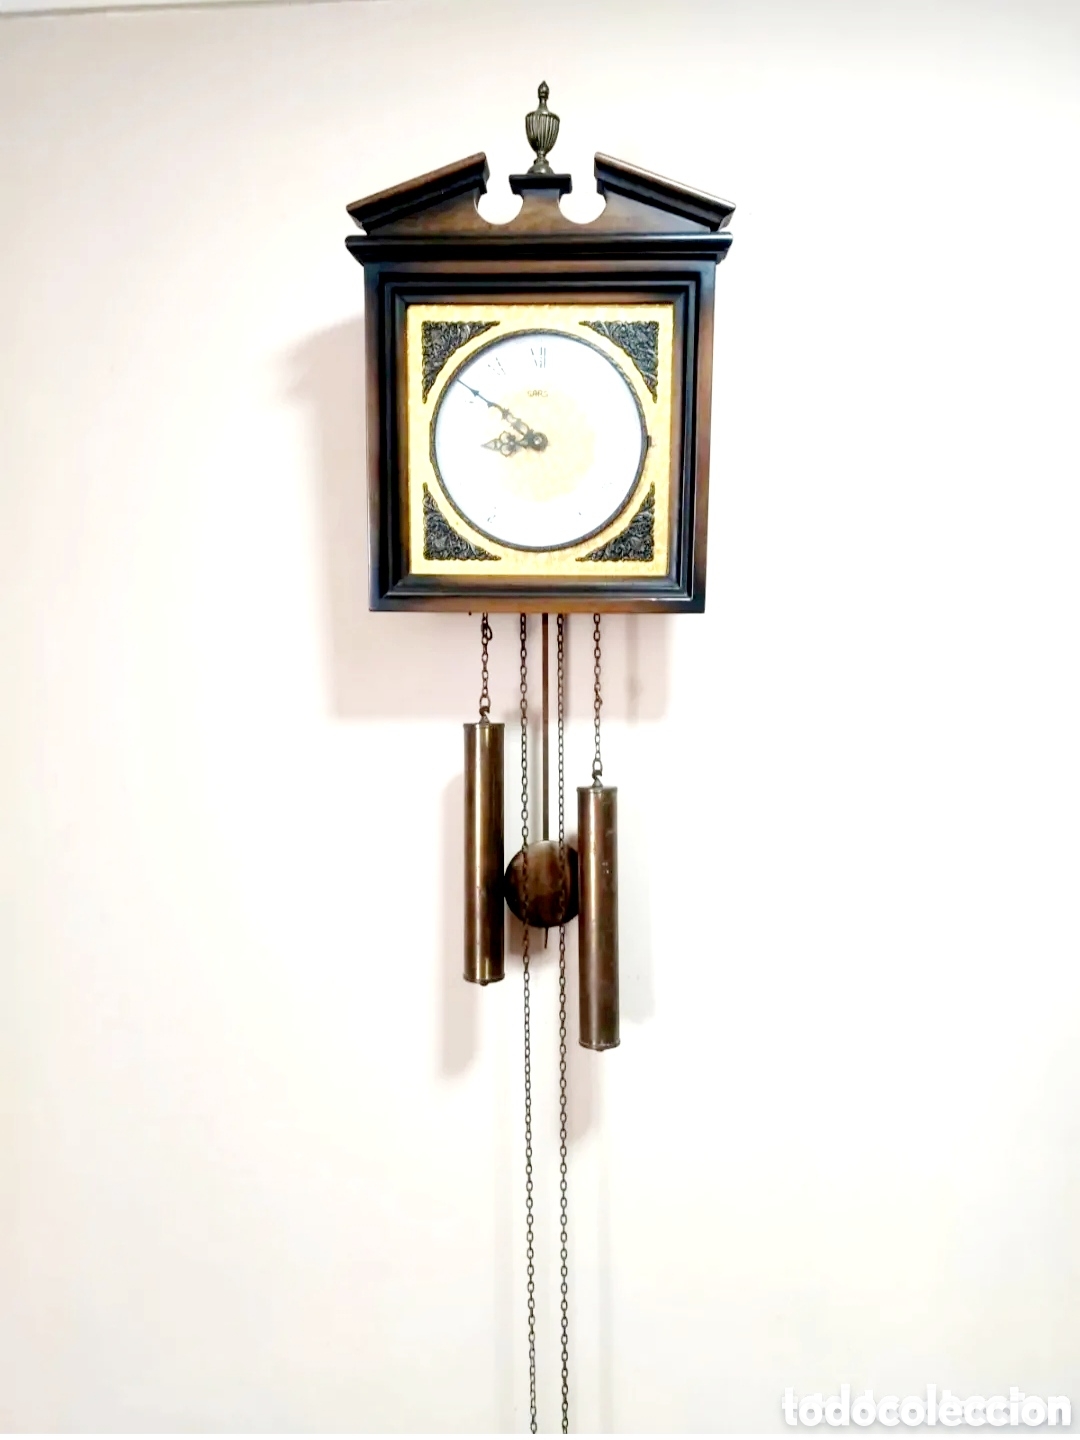 Reloj de pared de péndulo marca SARS de máquina moderna y sonería.